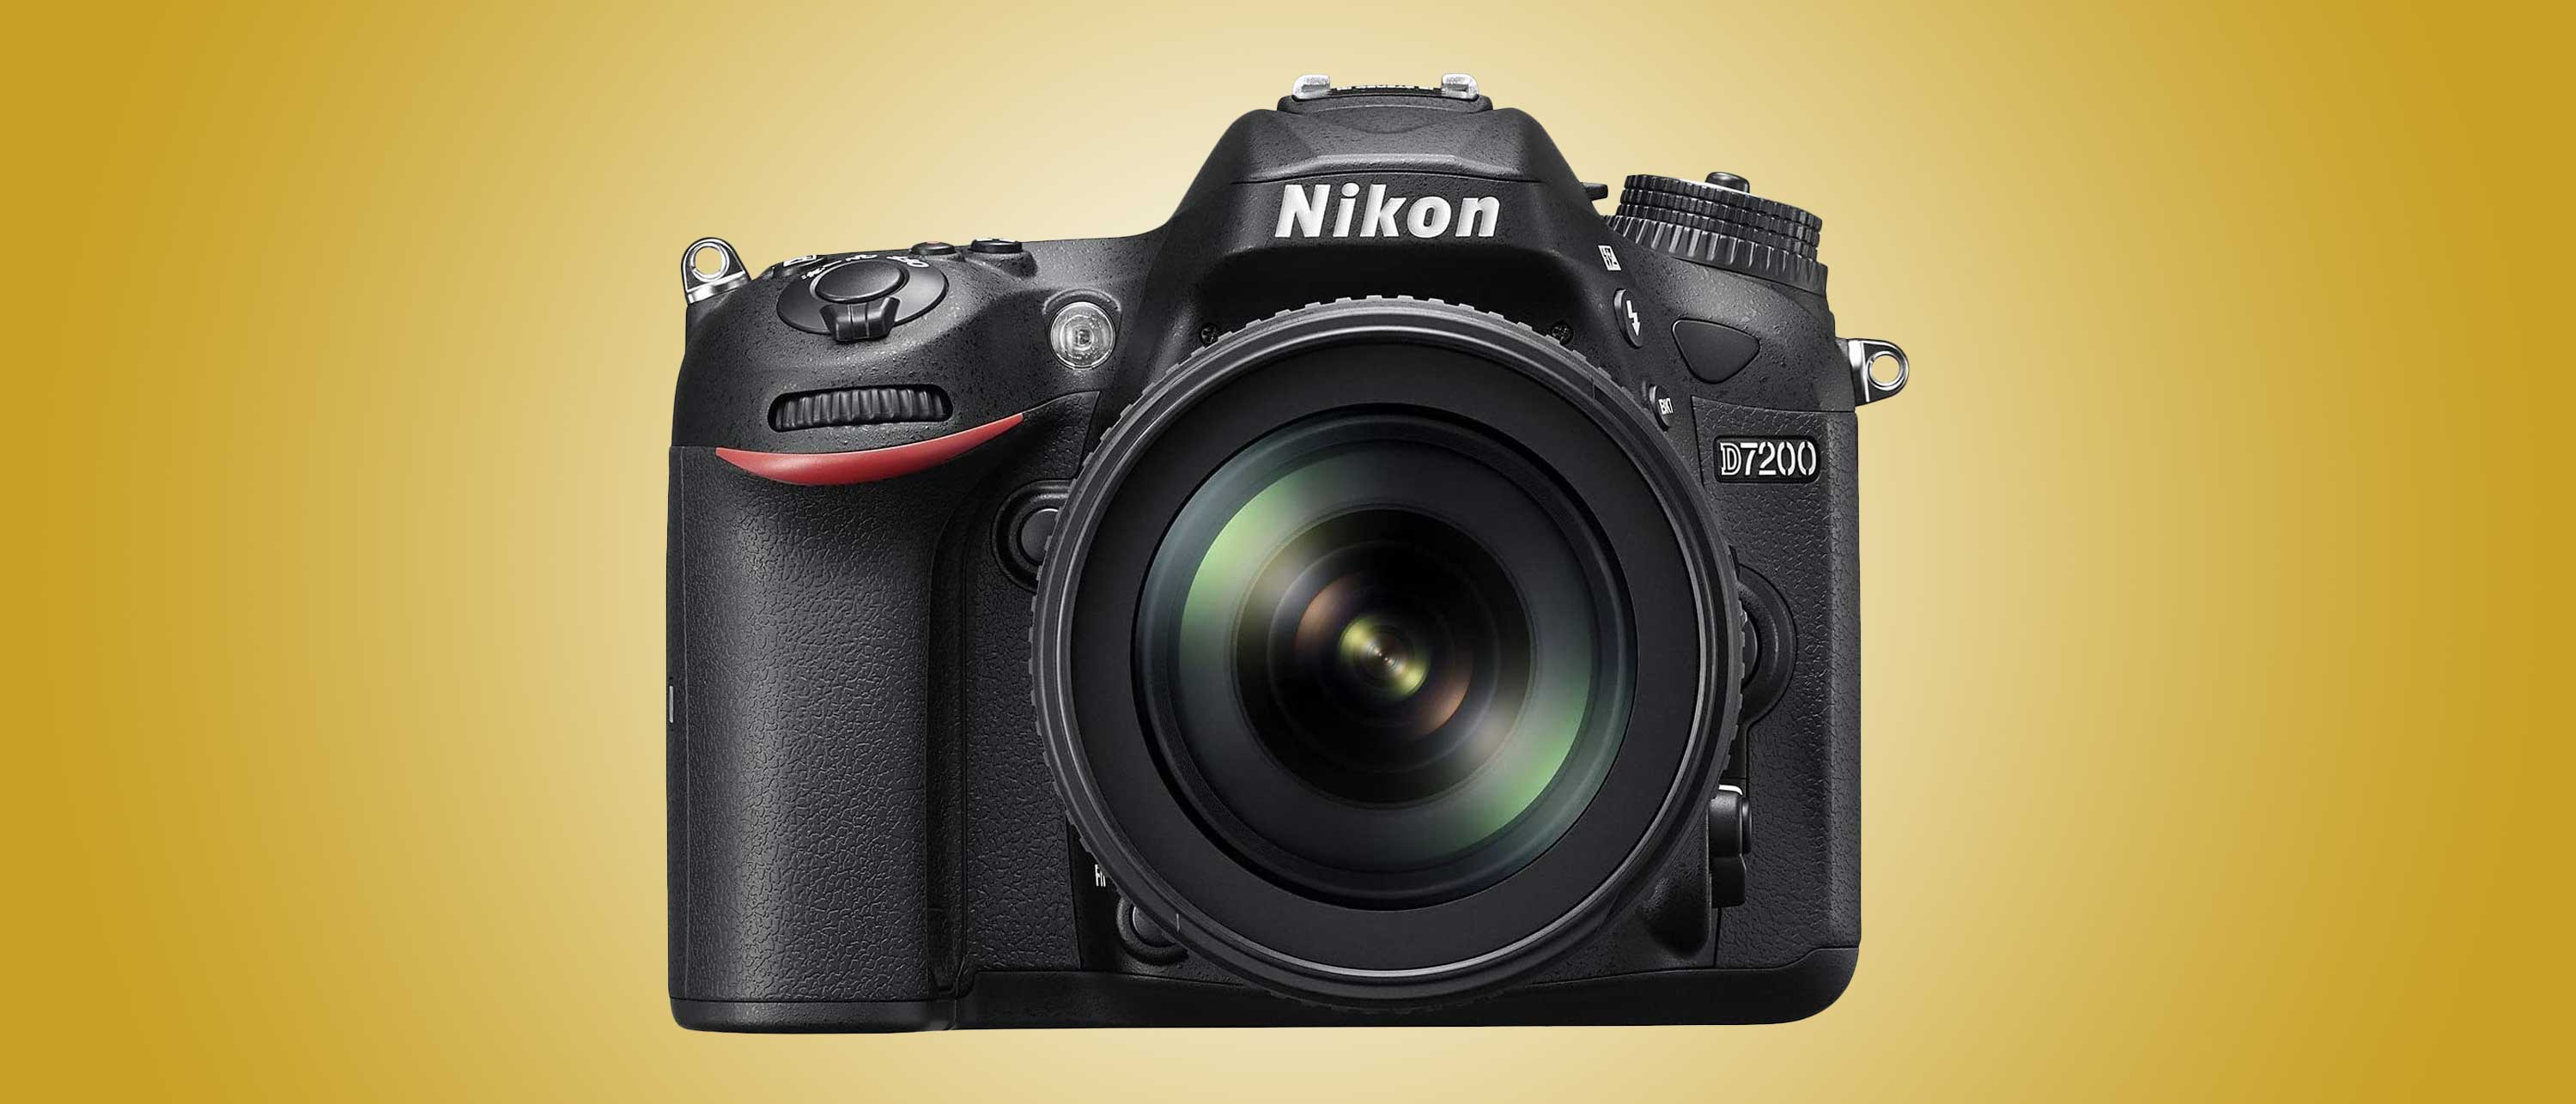 Nikon D810 #8931-